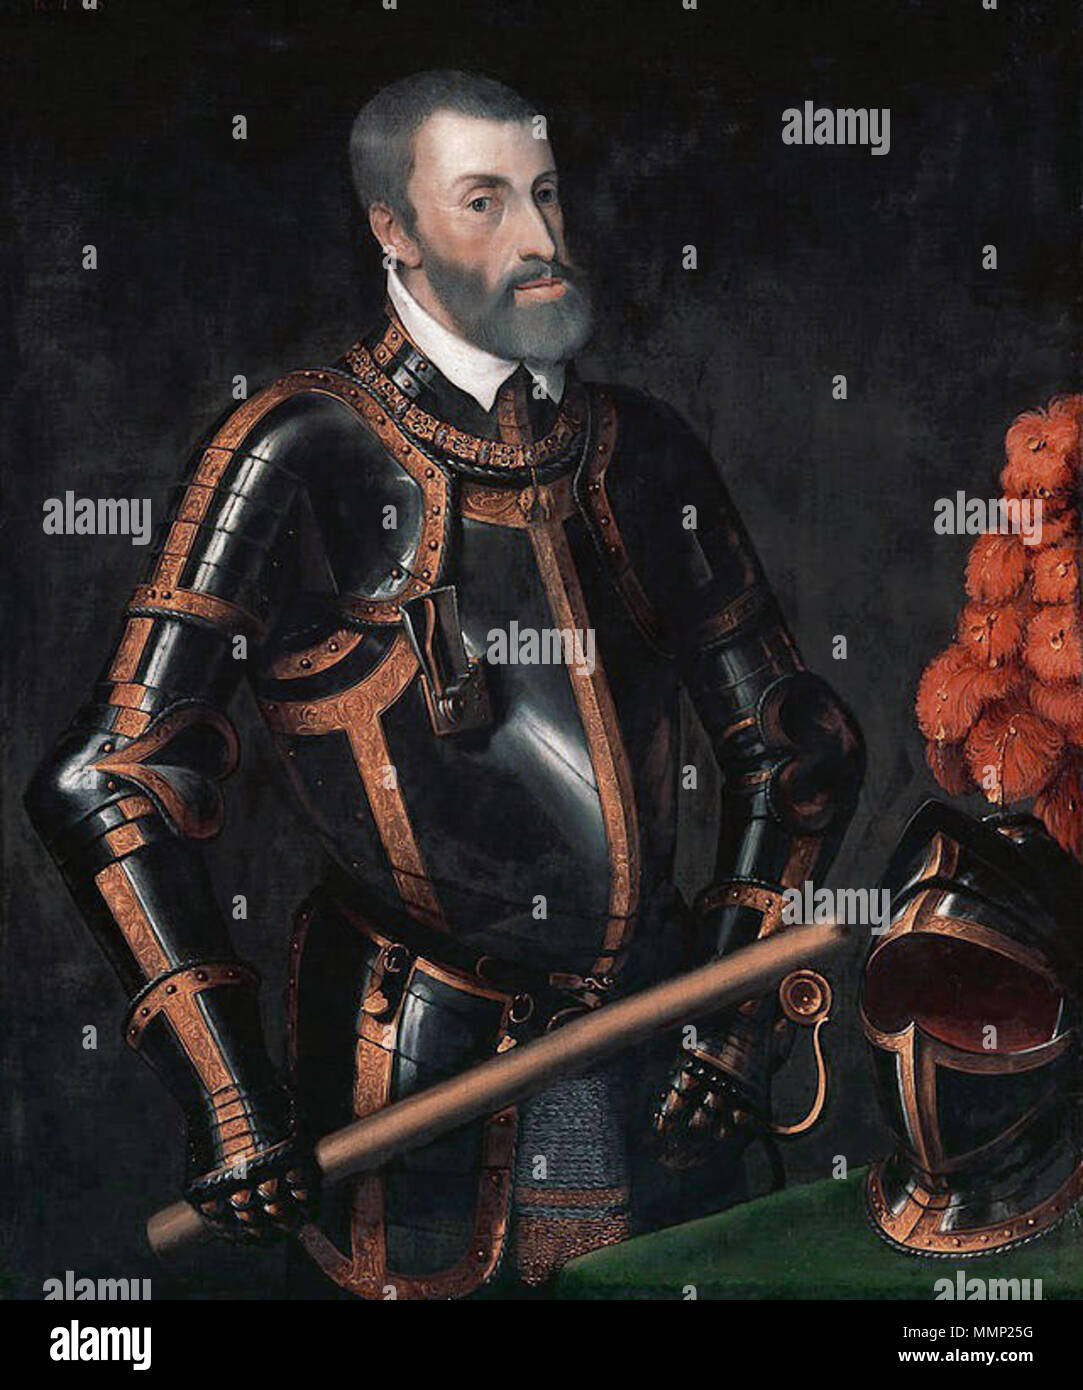 . Anglais : Karl V (aussi connu comme Don Carlos I d'Espagne), souverain de l'Empire romain . Années 1550. Personnes âgées Karl VFXD Banque D'Images